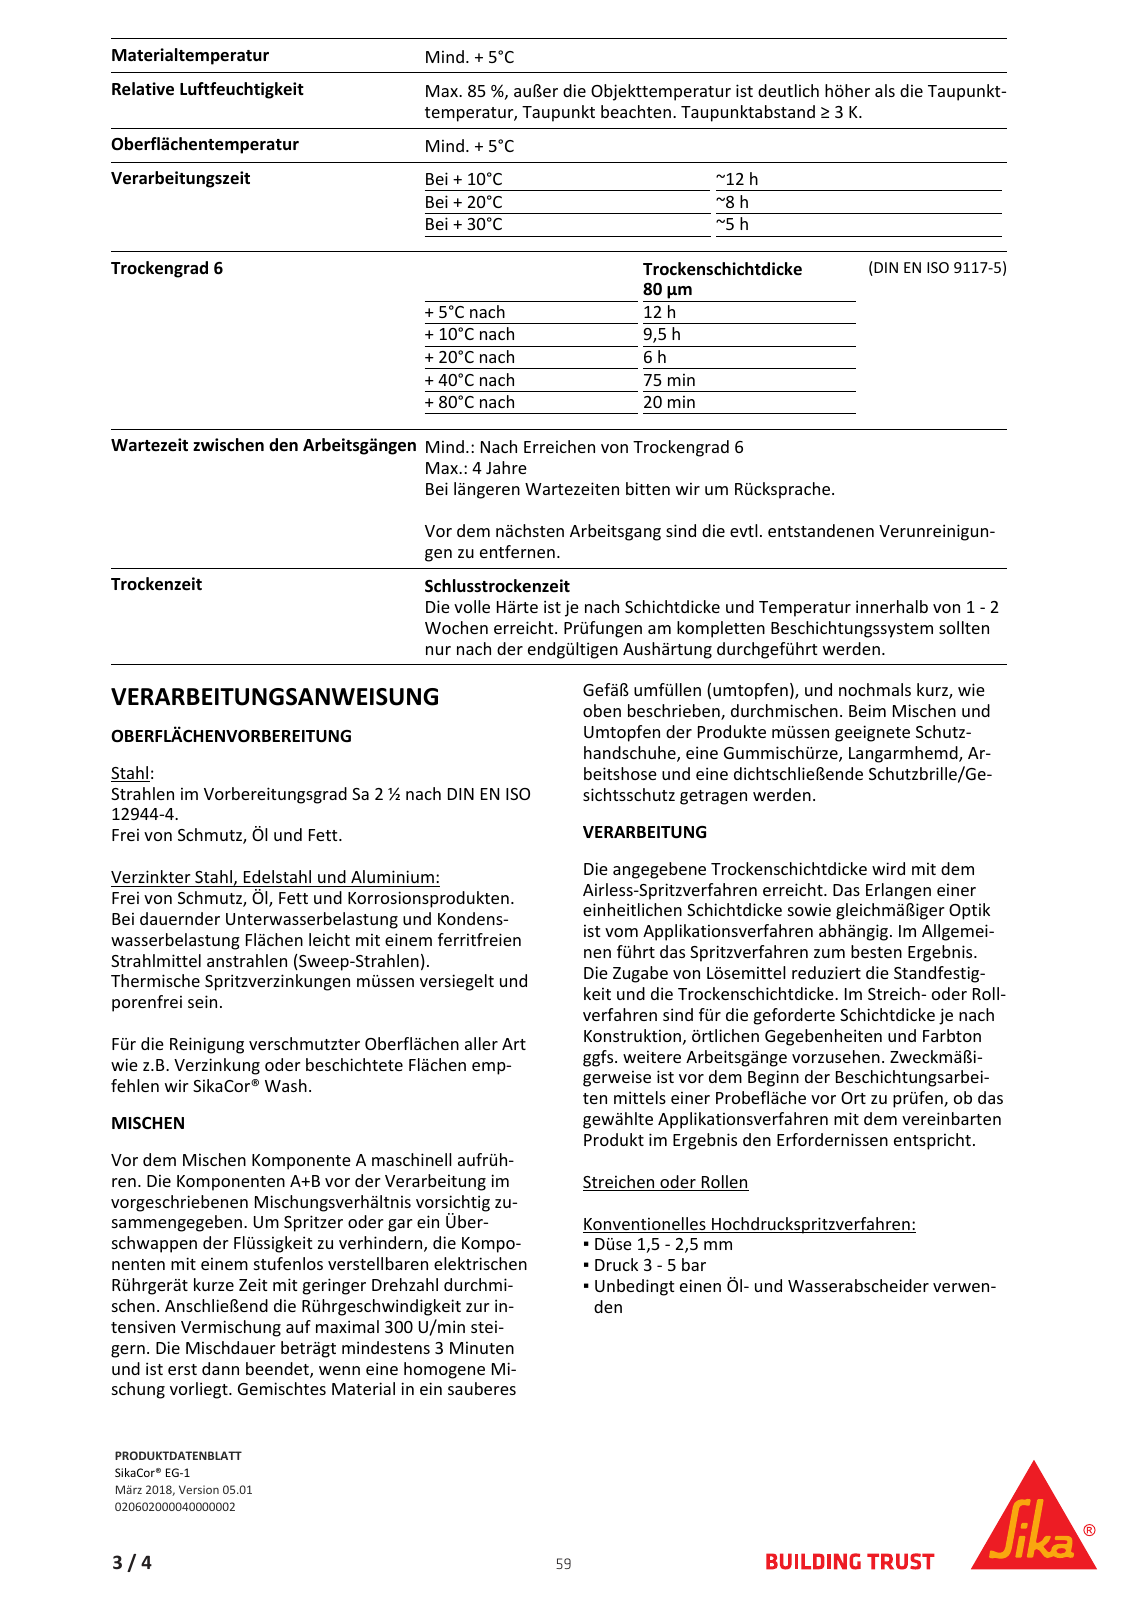 Vorschau Sika_Korrosionsschutz_und_Brandschutz_Band1 Seite 59